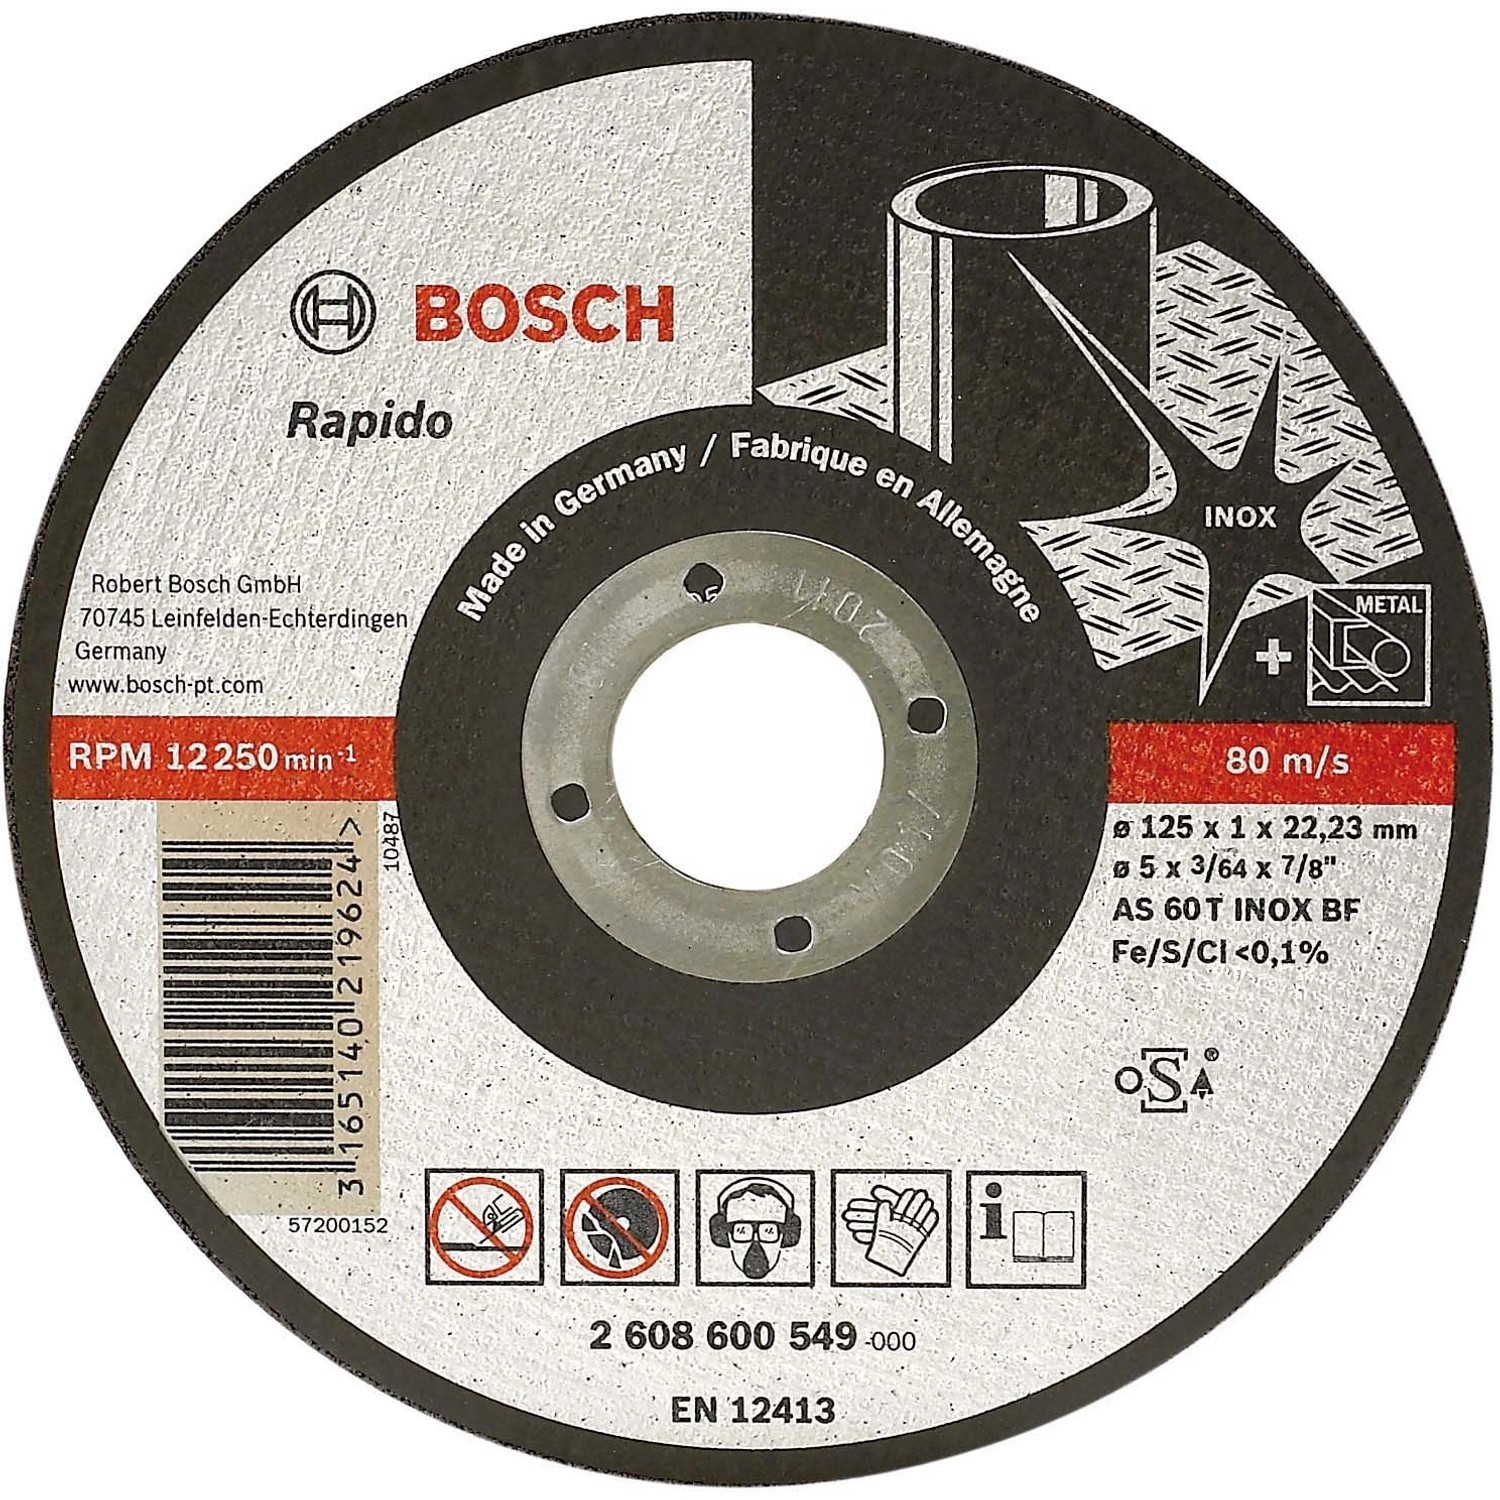 Bosch Schleif-Trennscheibe Rapido Inox 125 mm x 1,0 mm